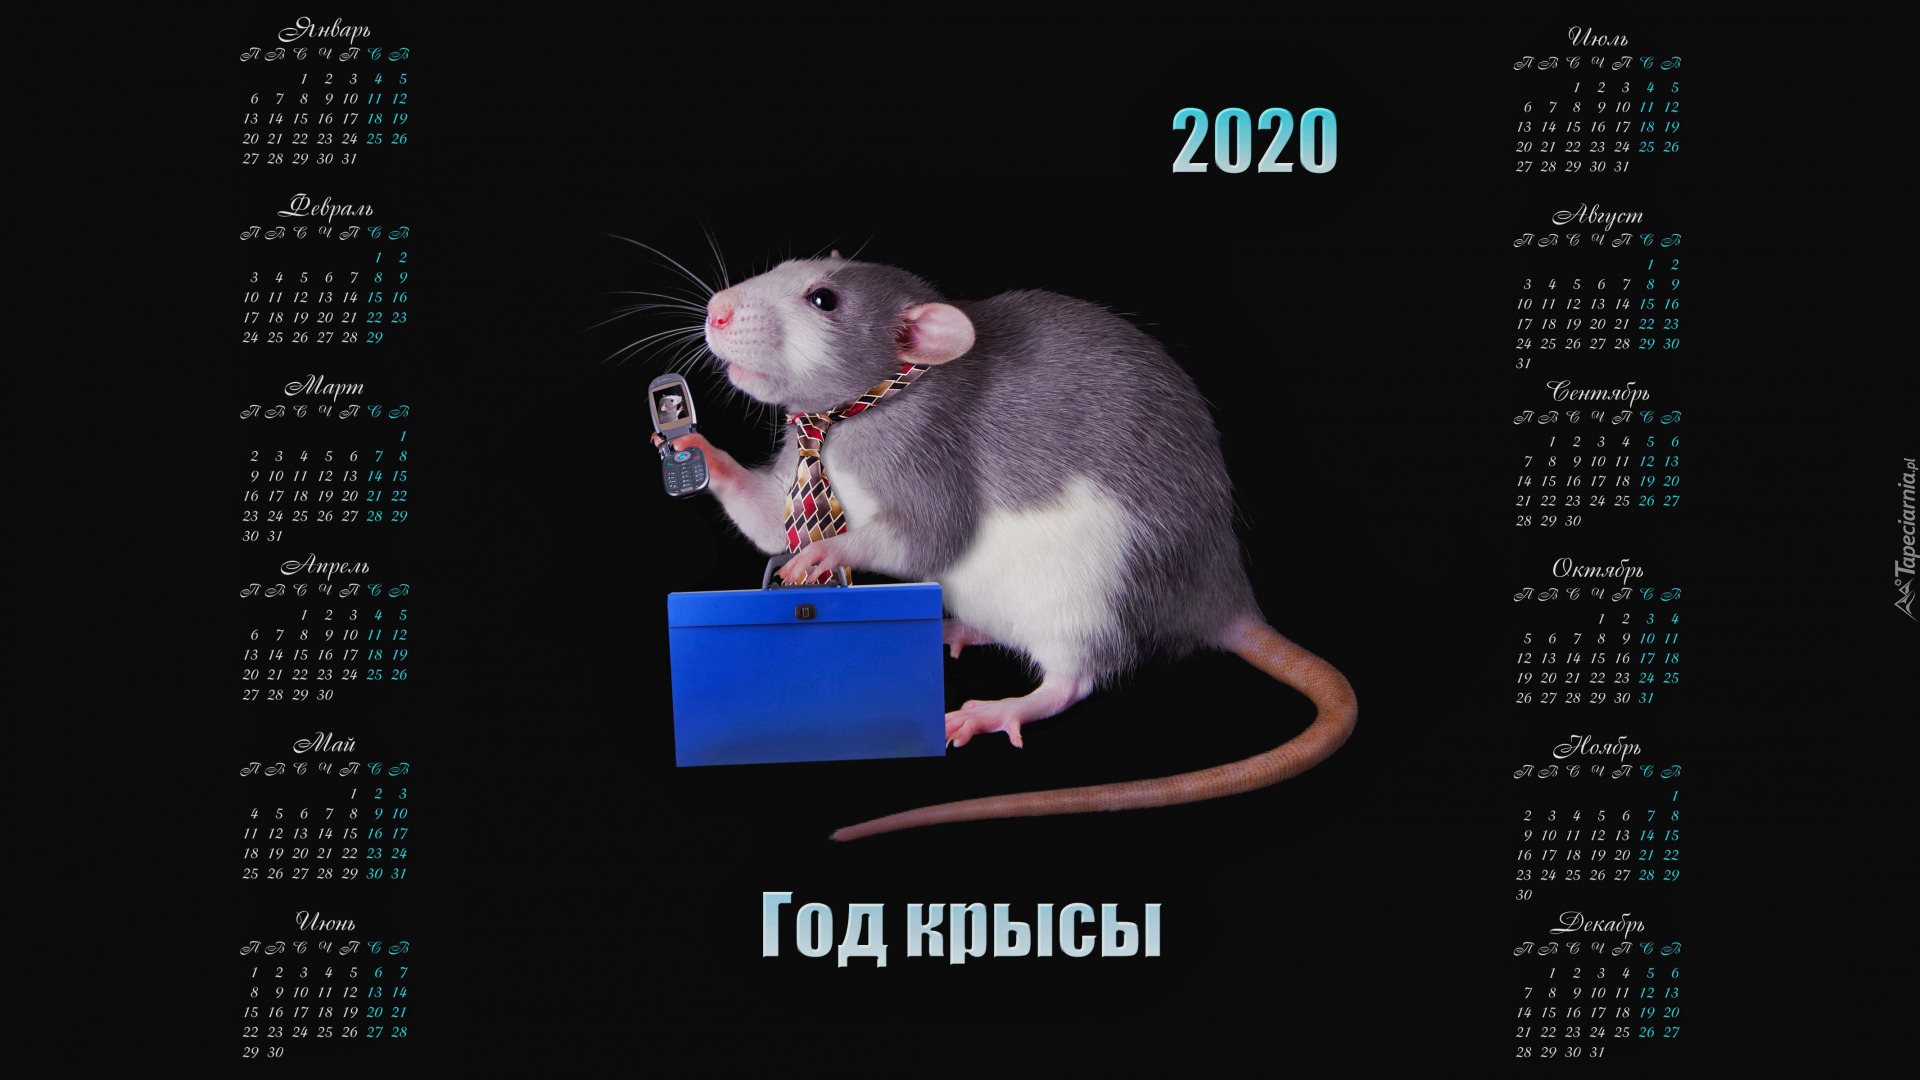 Kalendarz, 2020, Szczur, Krawat, Telefon, Teczka